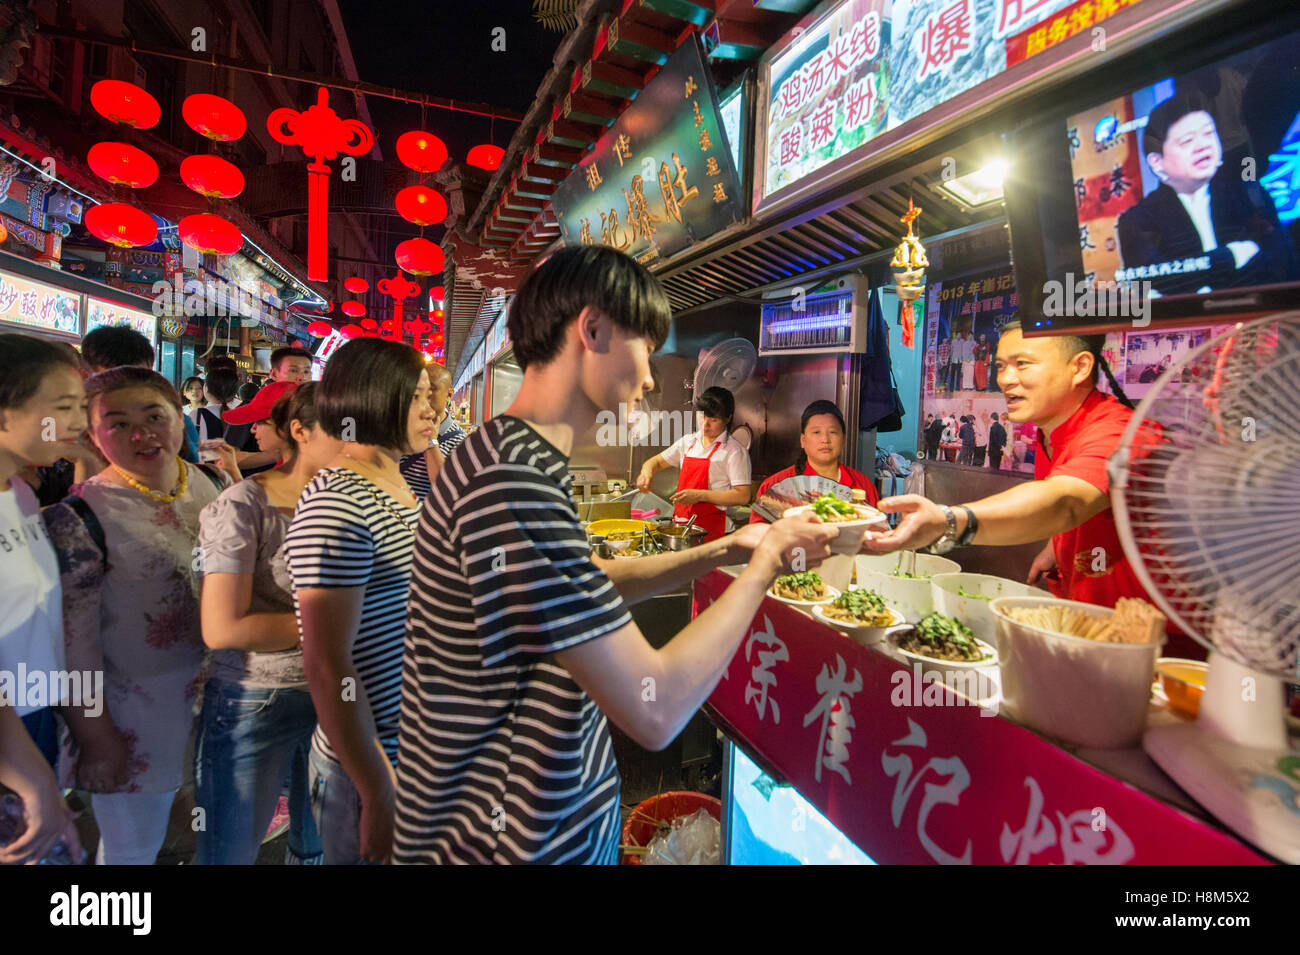 Pechino, Cina - la Donghuamen Snack Mercato Notturno, un grande mercato all'aperto che è un attrazione per i turisti e la gente del posto, individuare Foto Stock